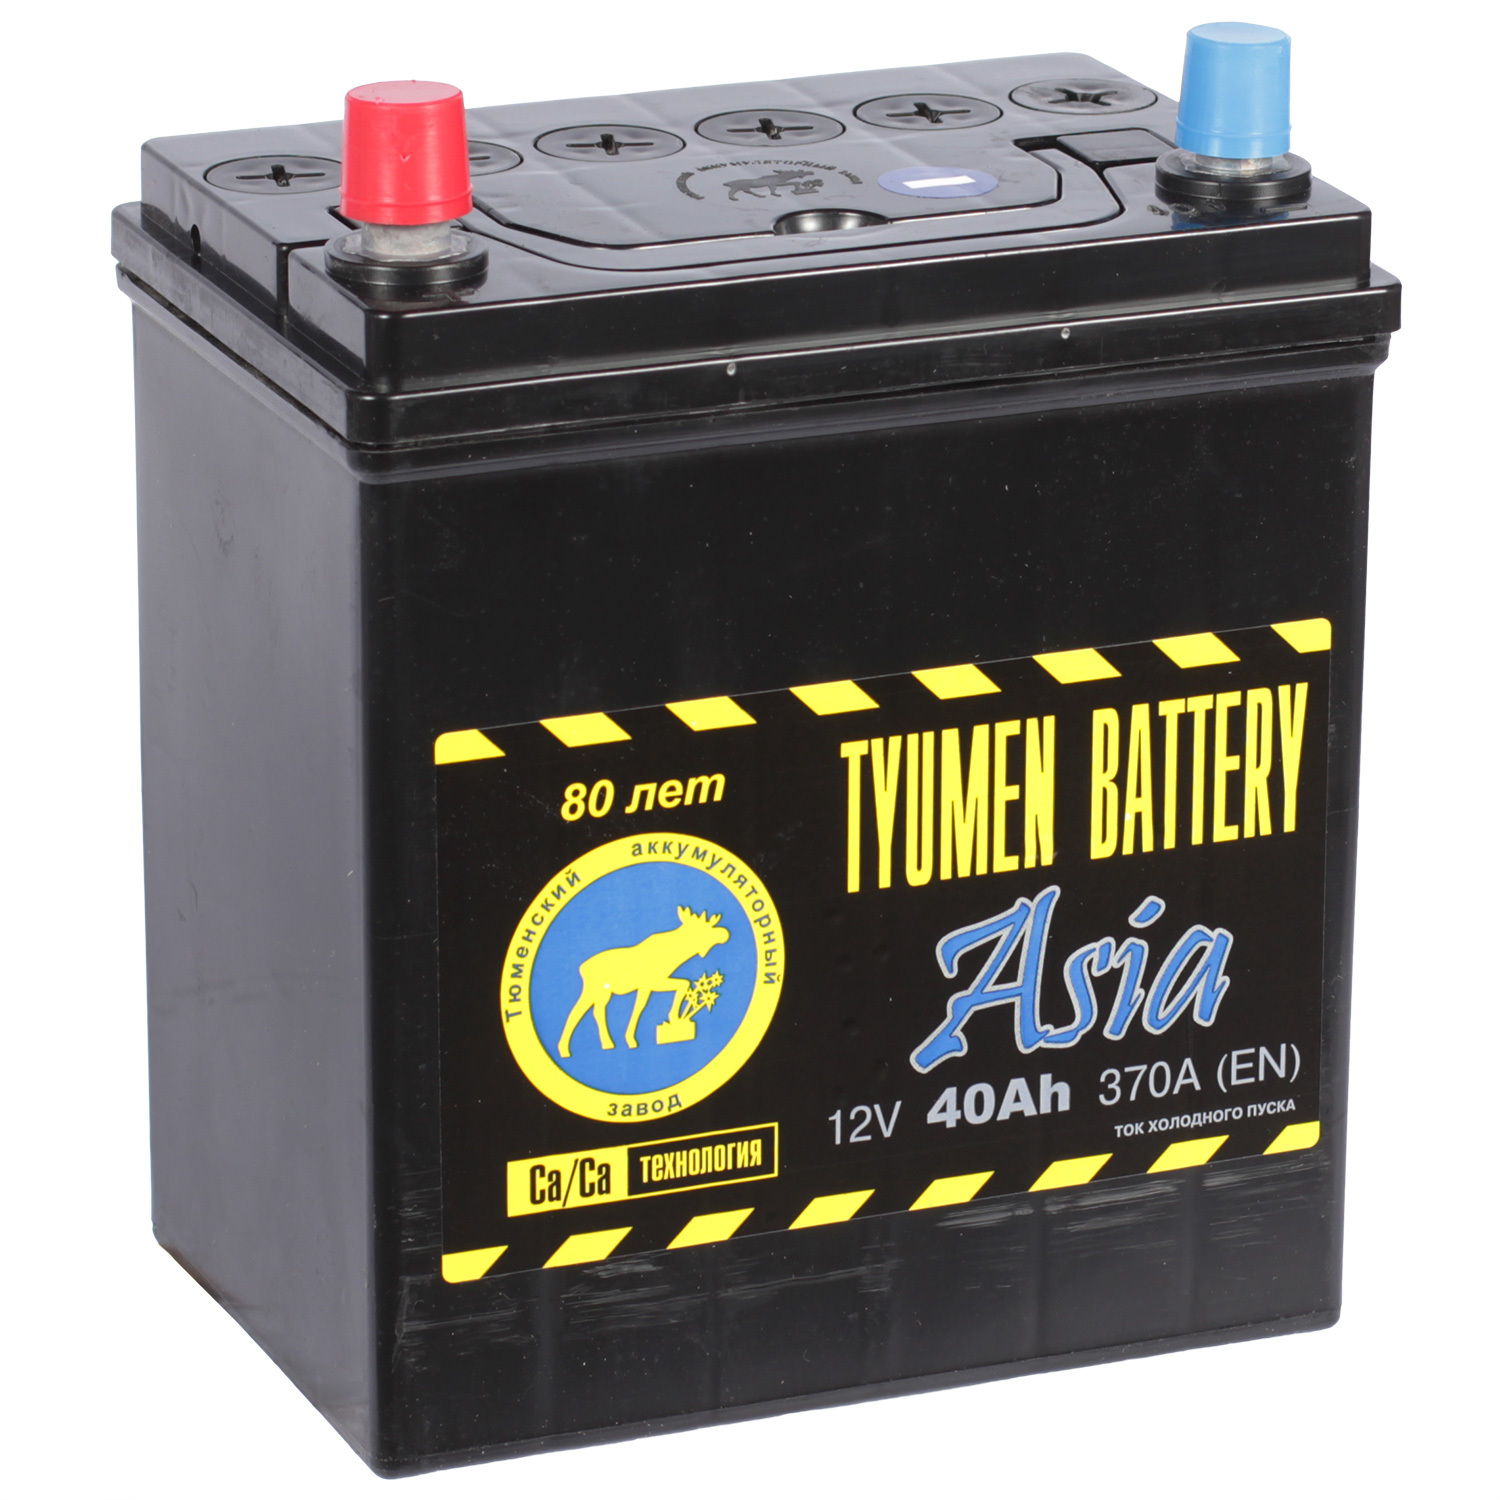 Tyumen Battery Автомобильный аккумулятор Tyumen Battery Asia 40 Ач прямая полярность B19R цена и фото